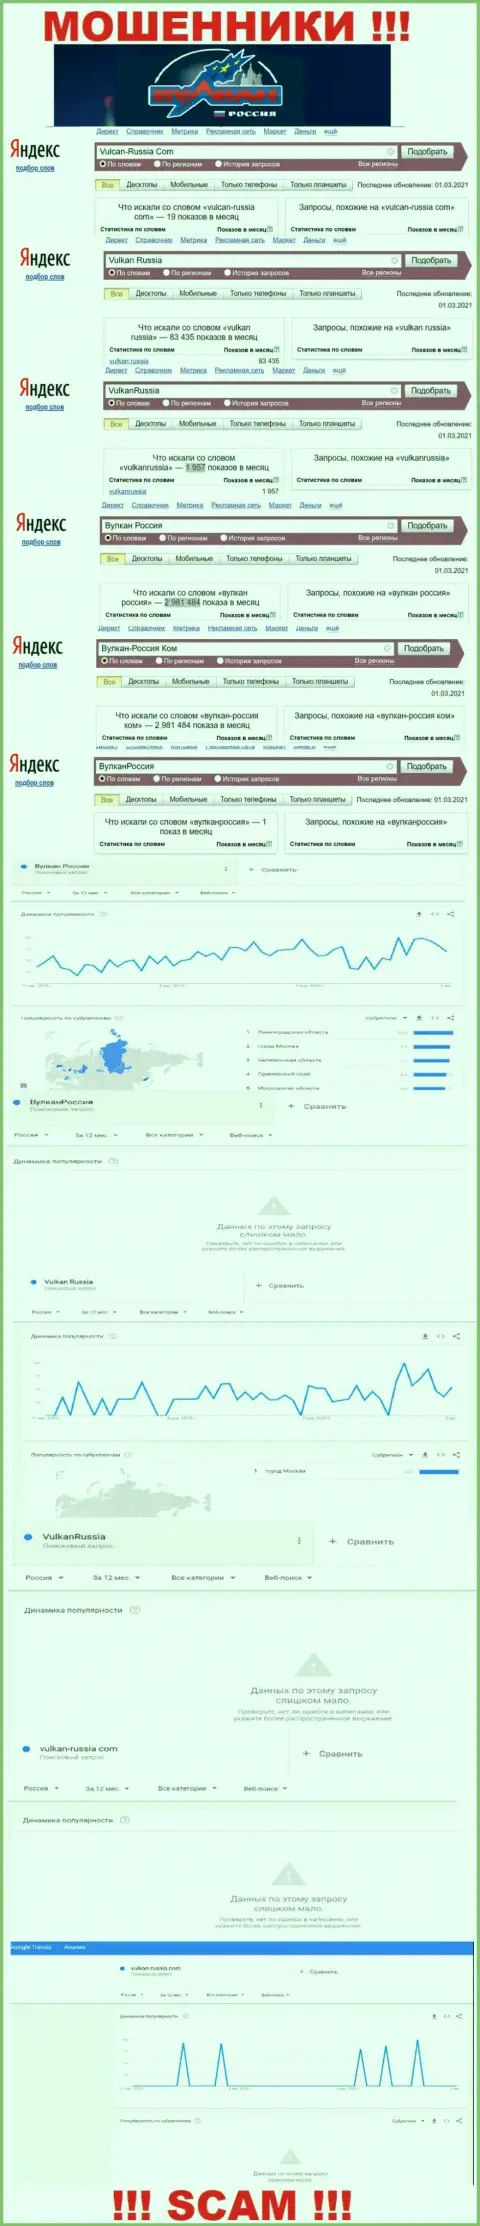 Статистика числа обзоров данных о мошенниках Вулкан Россия во всемирной сети